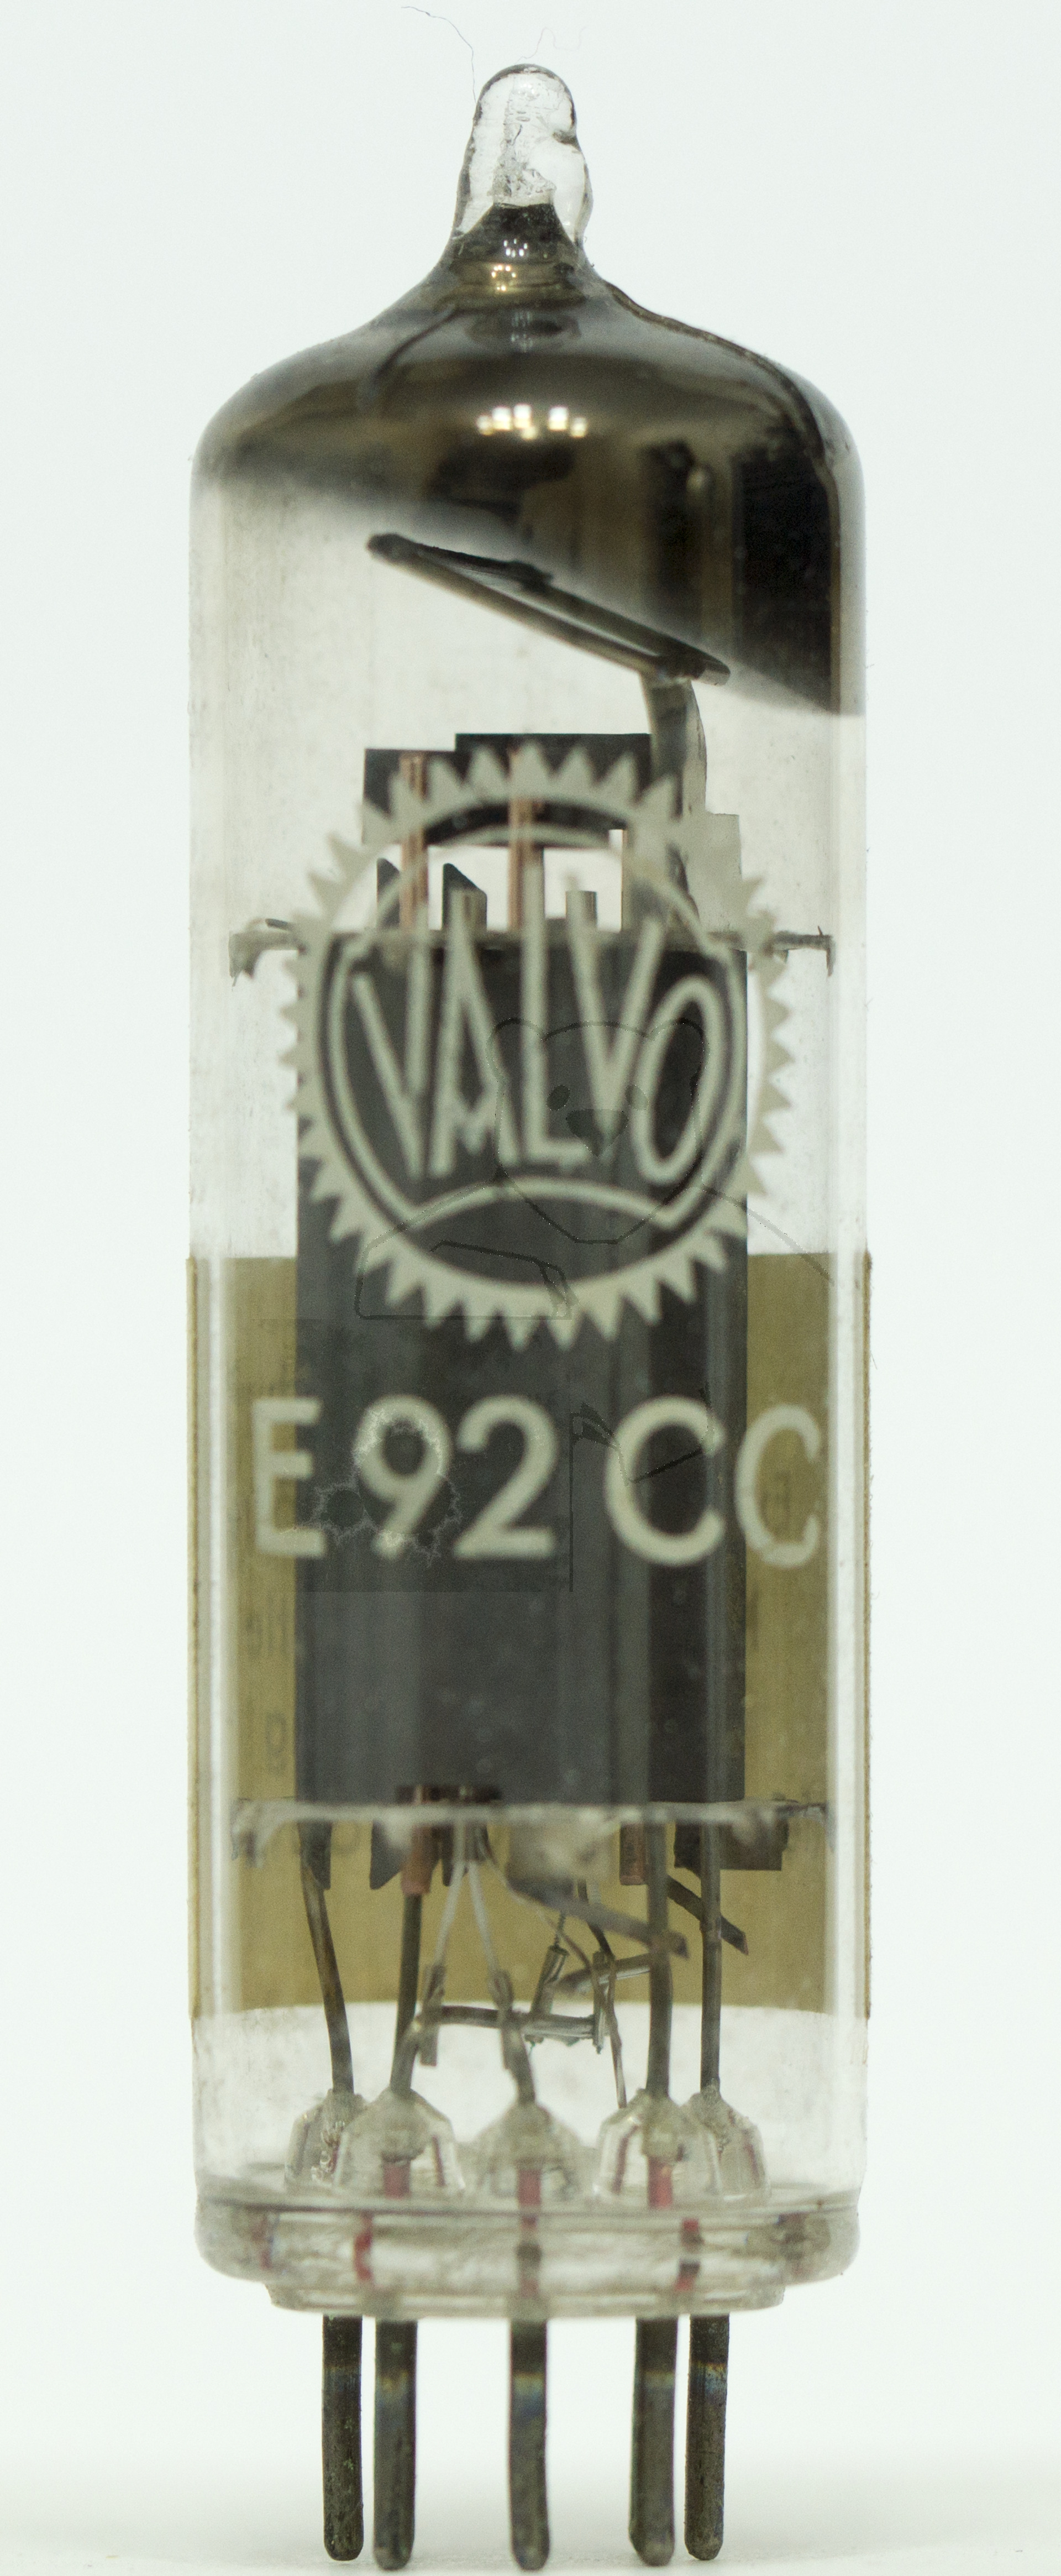 Röhre E92CC #7861 Bild 1 - Unverkäuflich - Experimentierröhre - Keine Garantie für Einhaltung der Propagandawerte